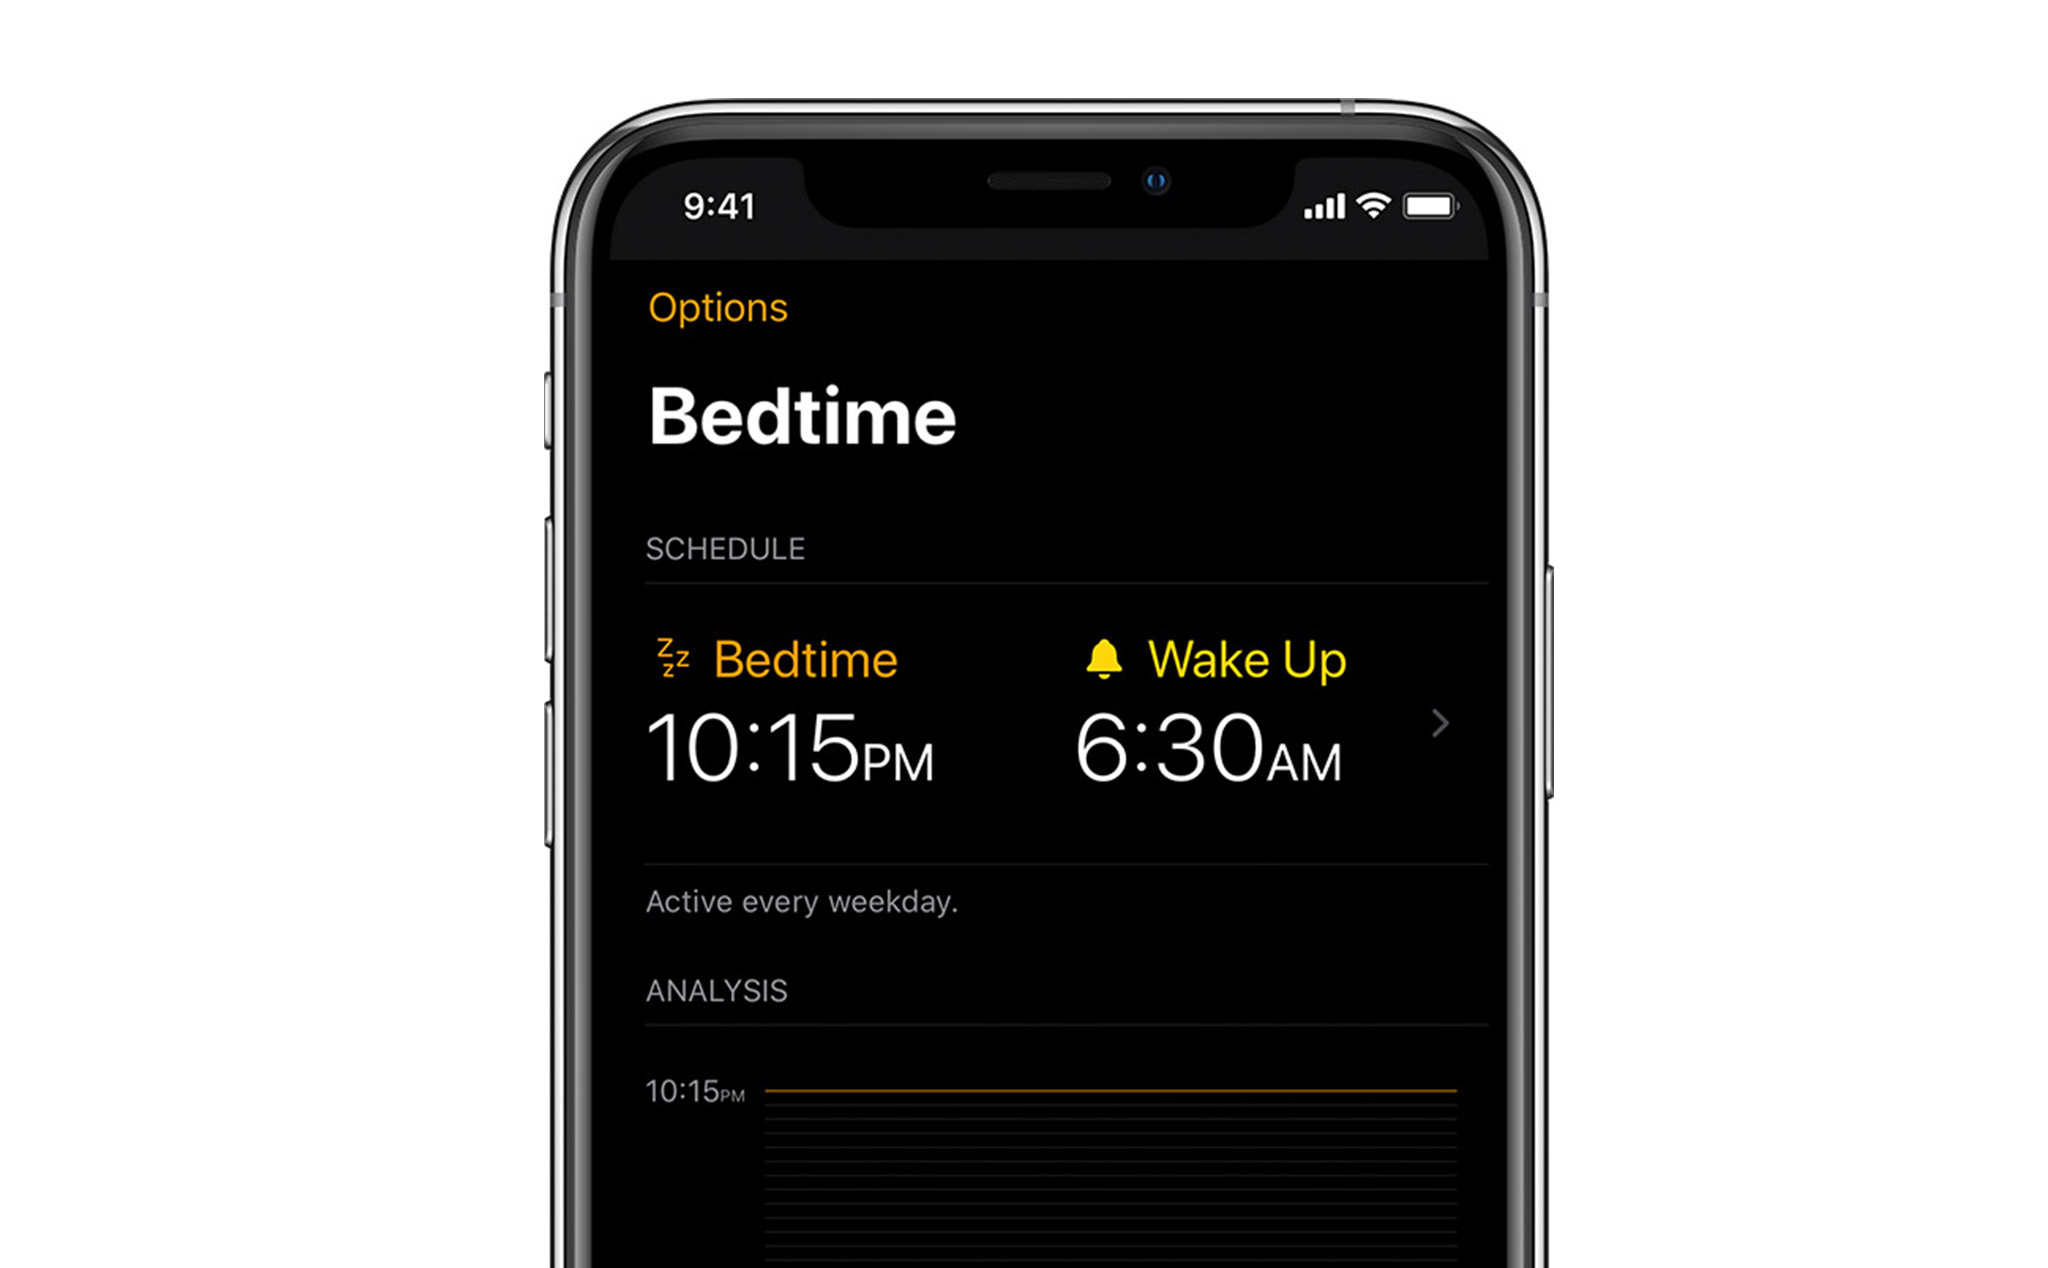 Cách thiết lập giờ đi ngủ trên iPhone: chọn mục tiêu ngủ, chọn app để sử dụng trước khi ngủ